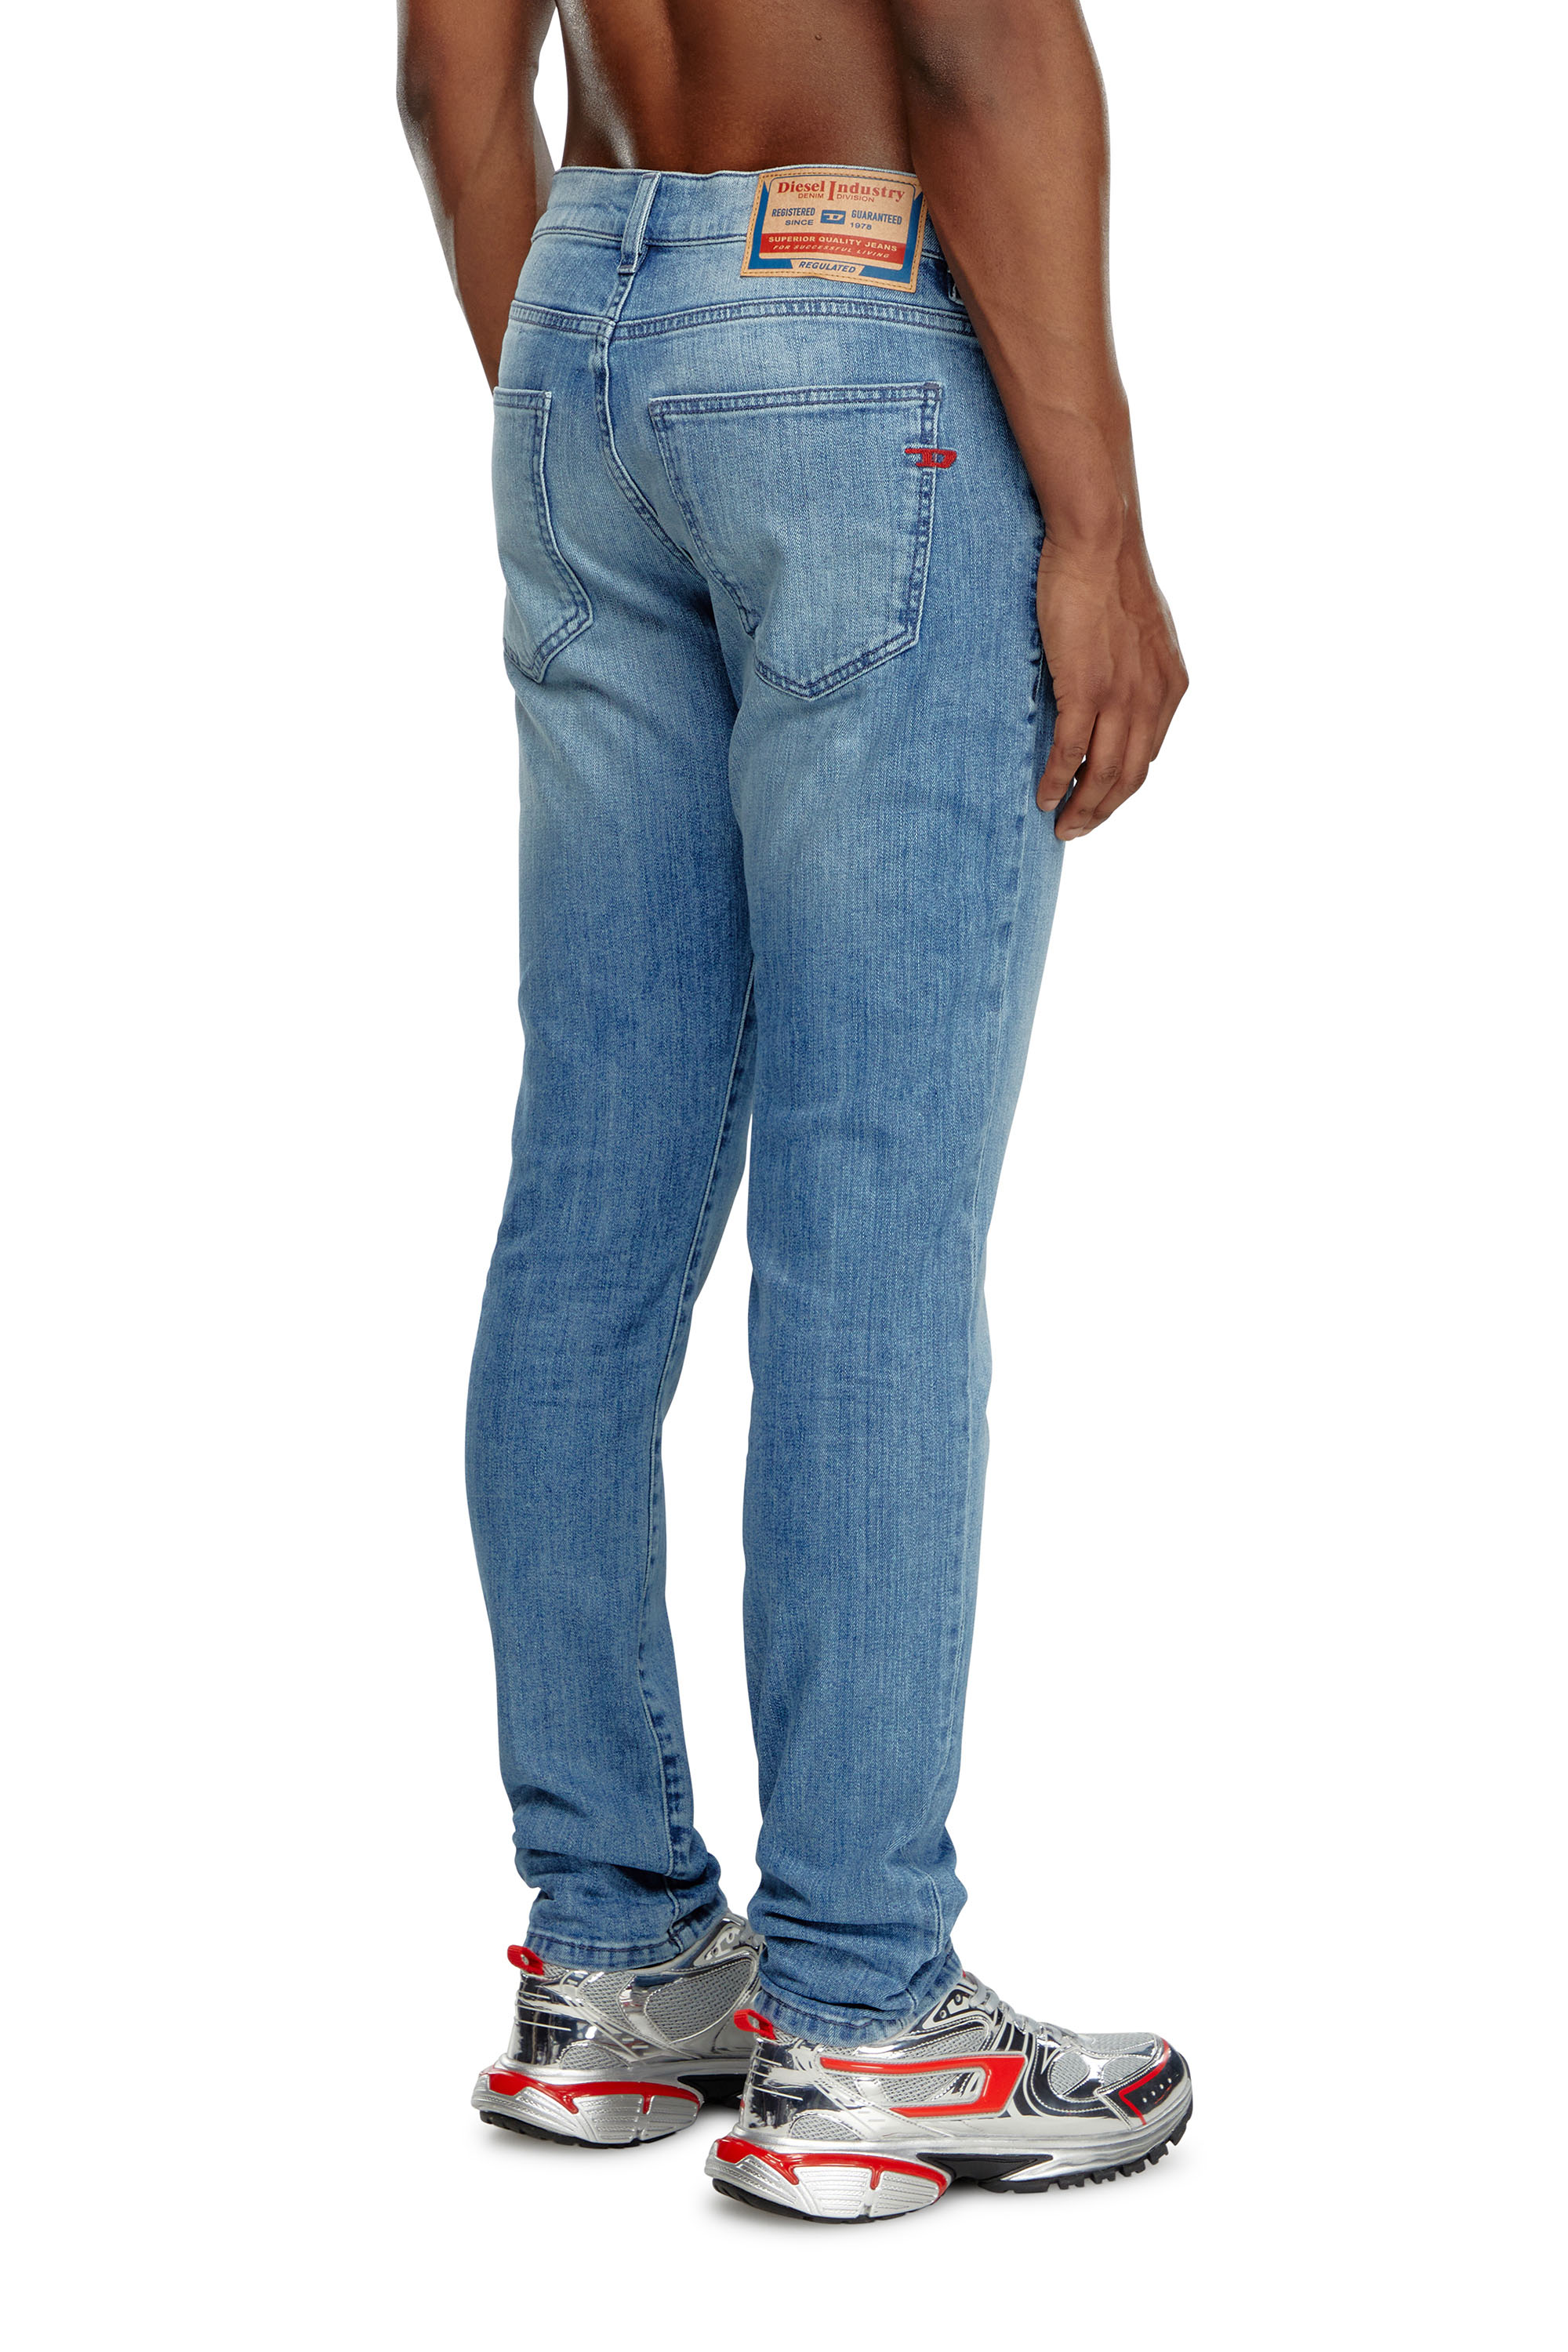 Diesel - Slim Jeans 2019 D-Strukt 0GRDI, Hombre Slim Jeans - 2019 D-Strukt in Azul marino - Image 3